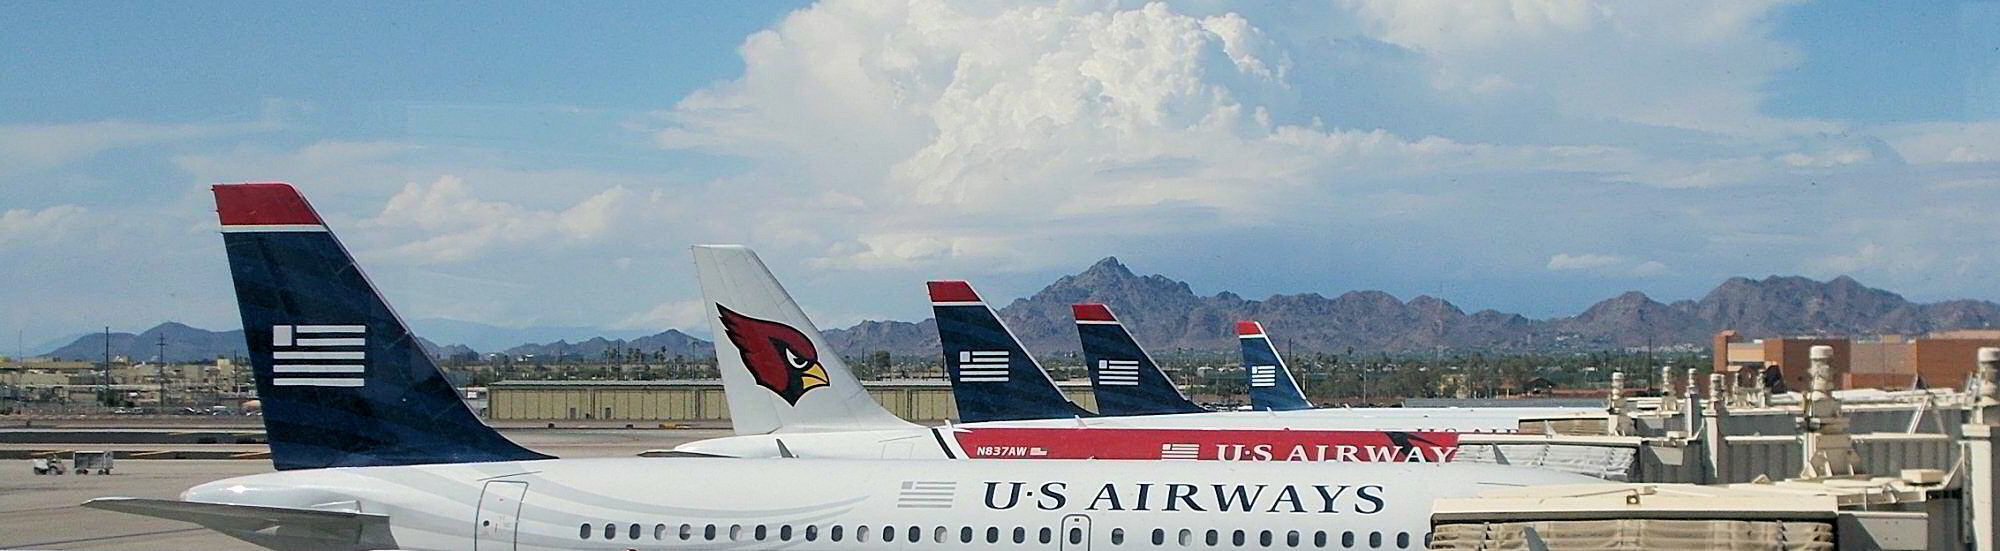 US Airways liveries